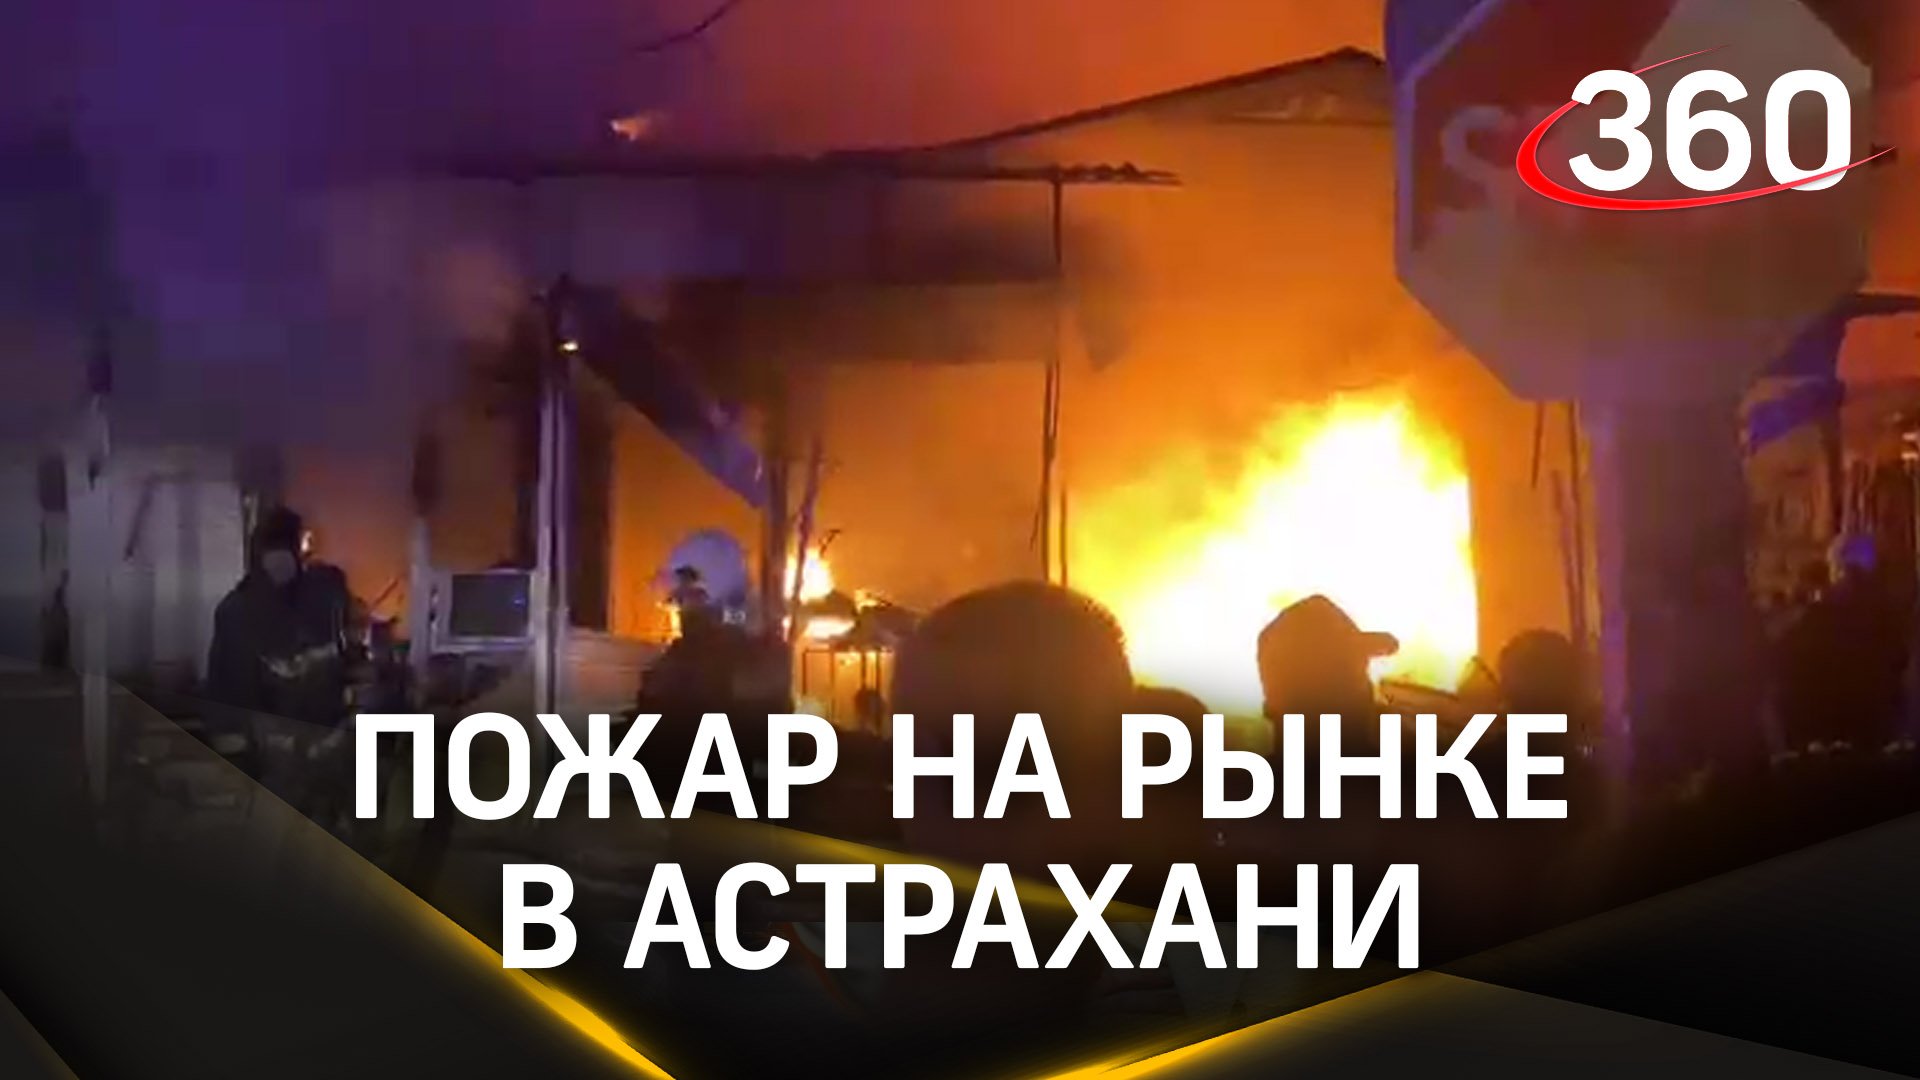 Пожар на крупнейшем рынке в Астрахани